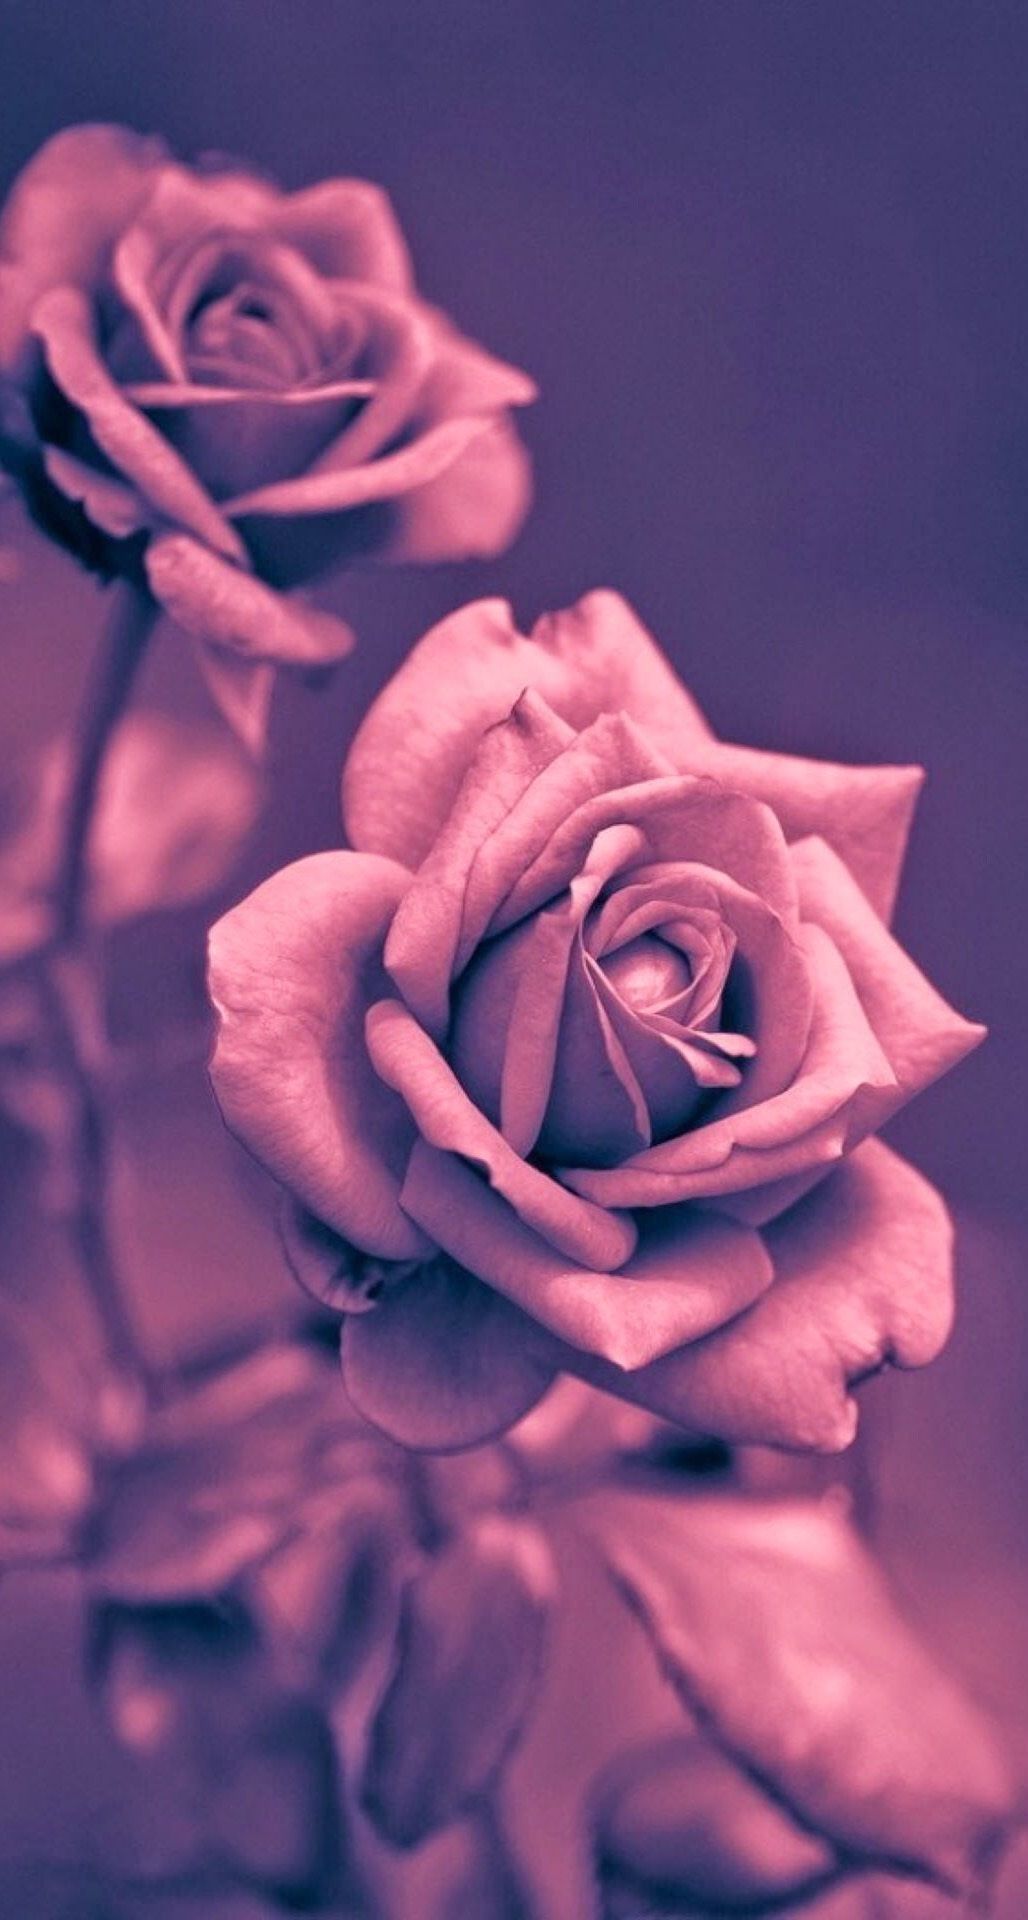 Bộ sưu tập hình nền đáng yêu với hoa hồng vô cùng dễ thương sẽ khiến bạn phải xuýt xoa. Hãy chiêm ngưỡng những bông hoa hồng tuyệt đẹp đầy màu sắc được sắp xếp một cách tinh tế trên nền nâu trầm ấm. Hình nền này sẽ không chỉ làm tươi mới và tạo cảm hứng cho điện thoại của bạn mà còn đem tới cho bạn cảm giác tràn đầy hạnh phúc và yêu đời. Hãy khám phá ngay!